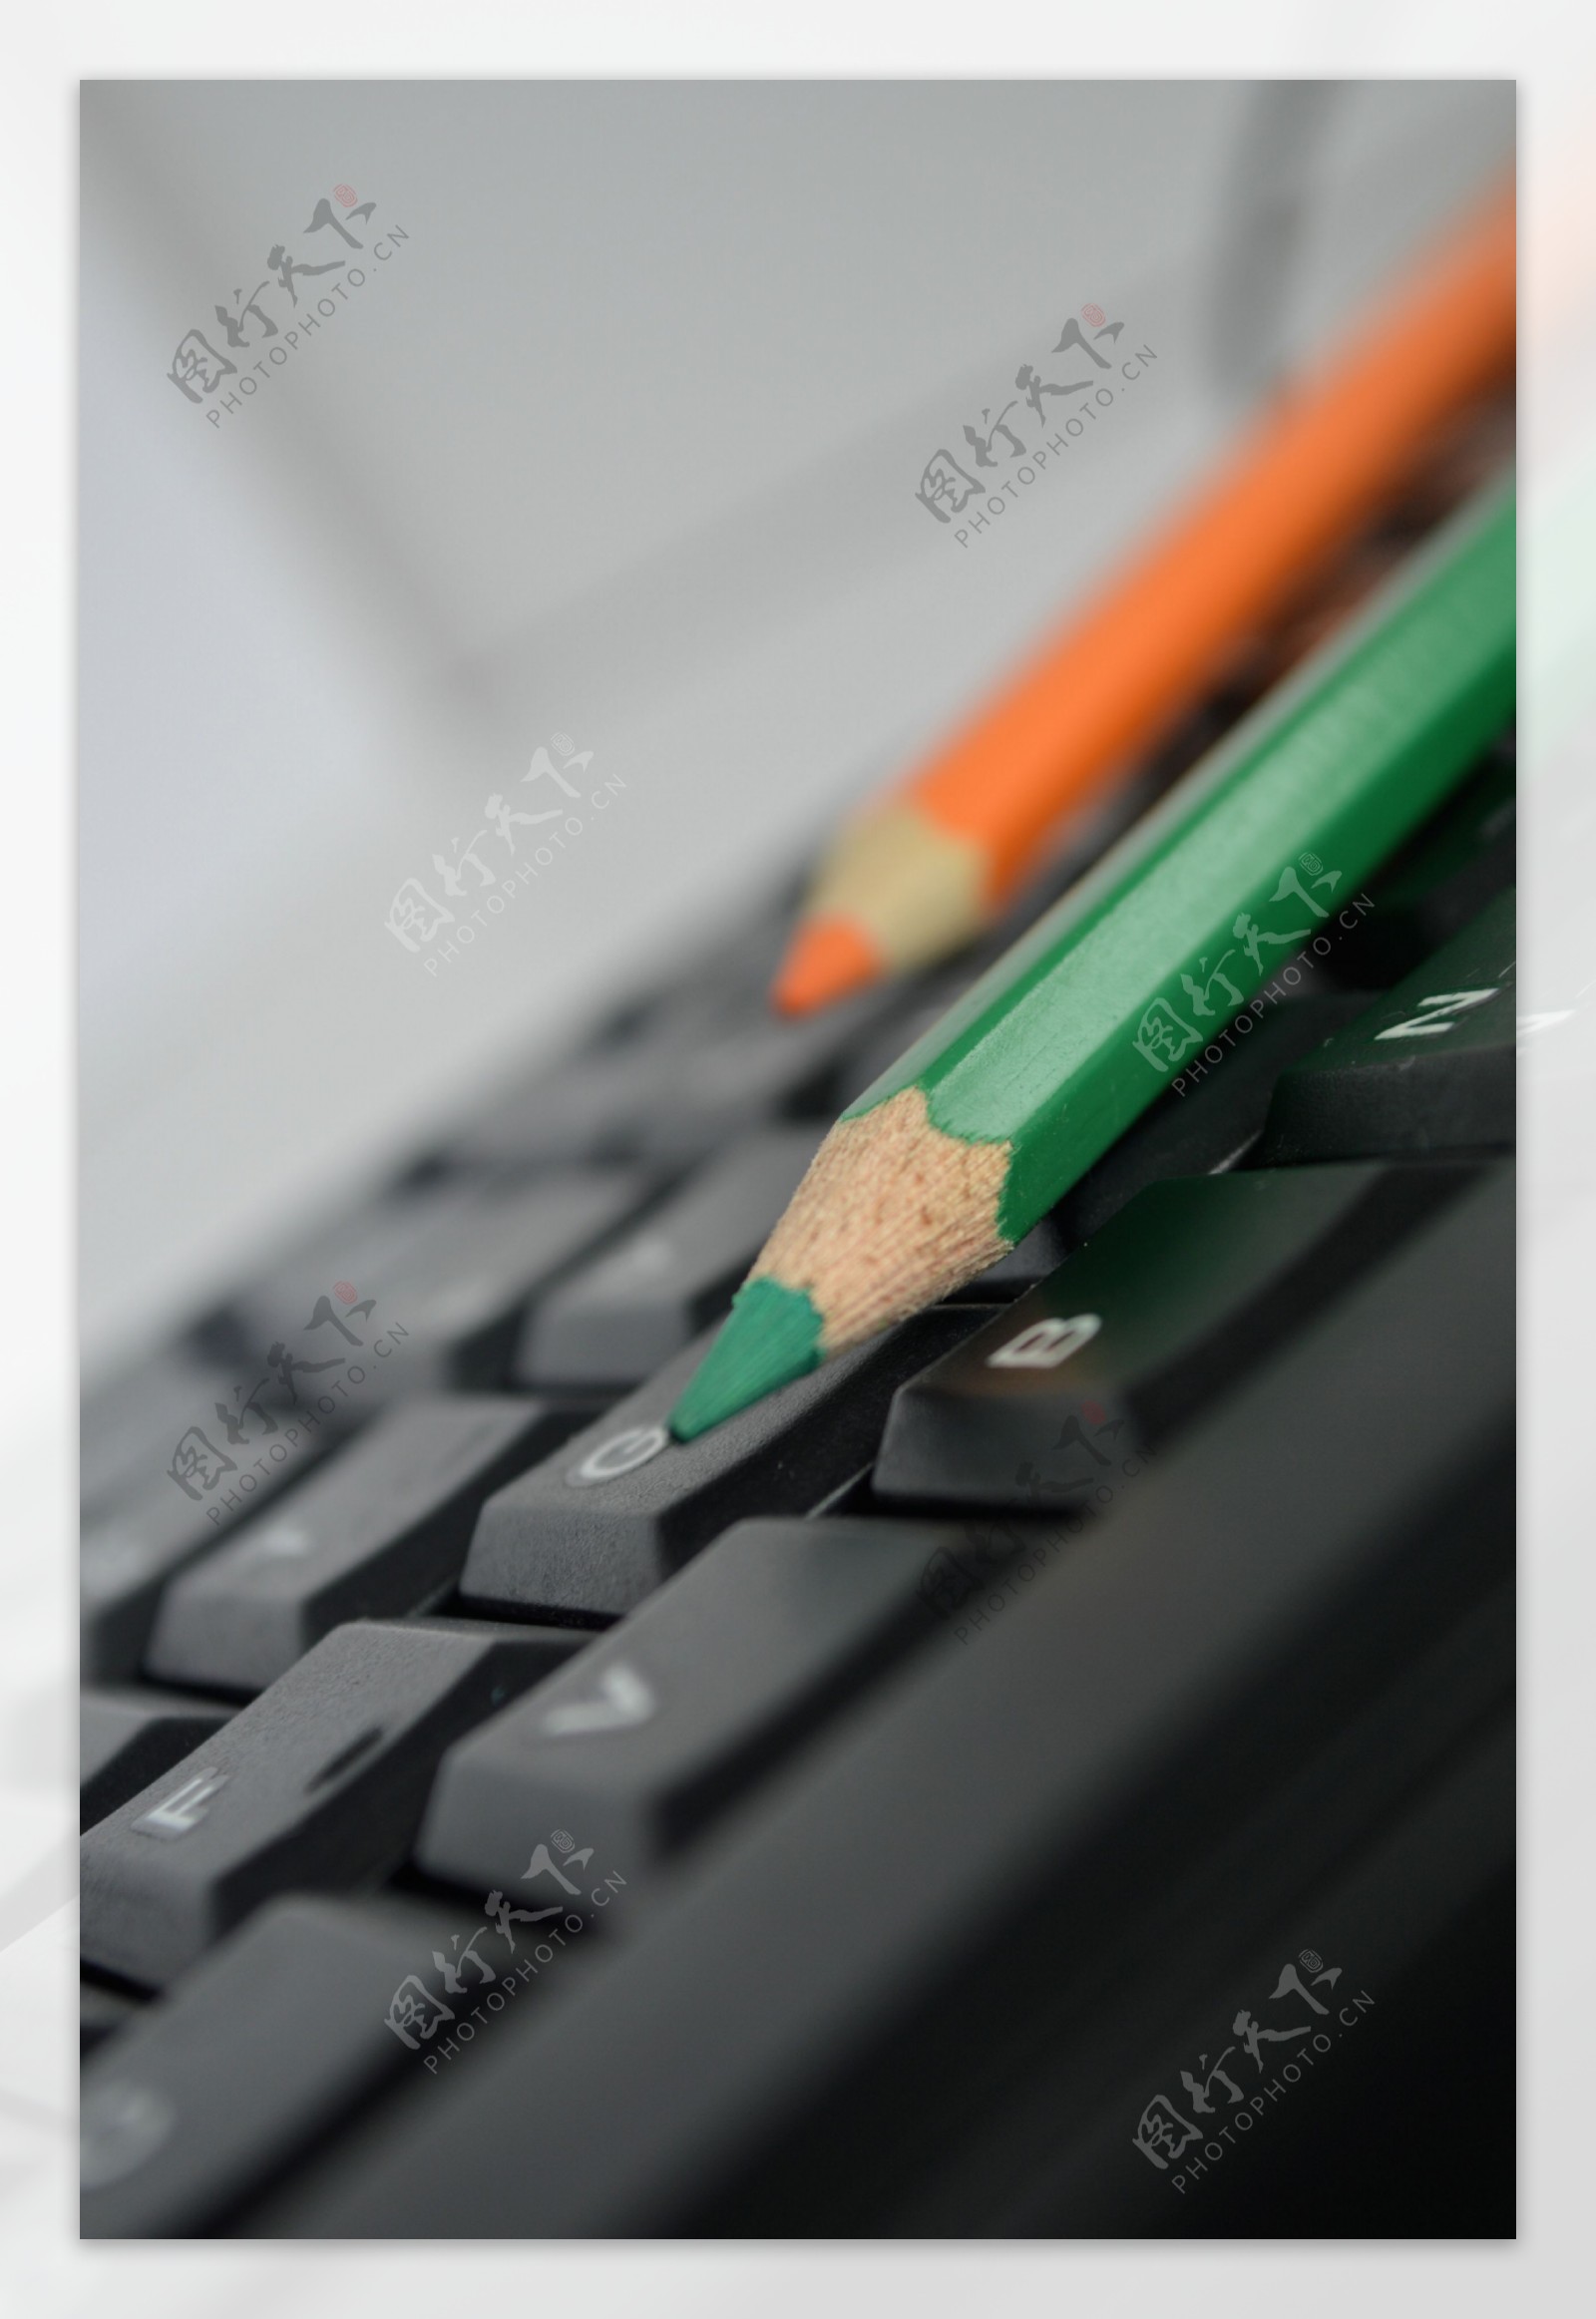 键盘上的画笔图片